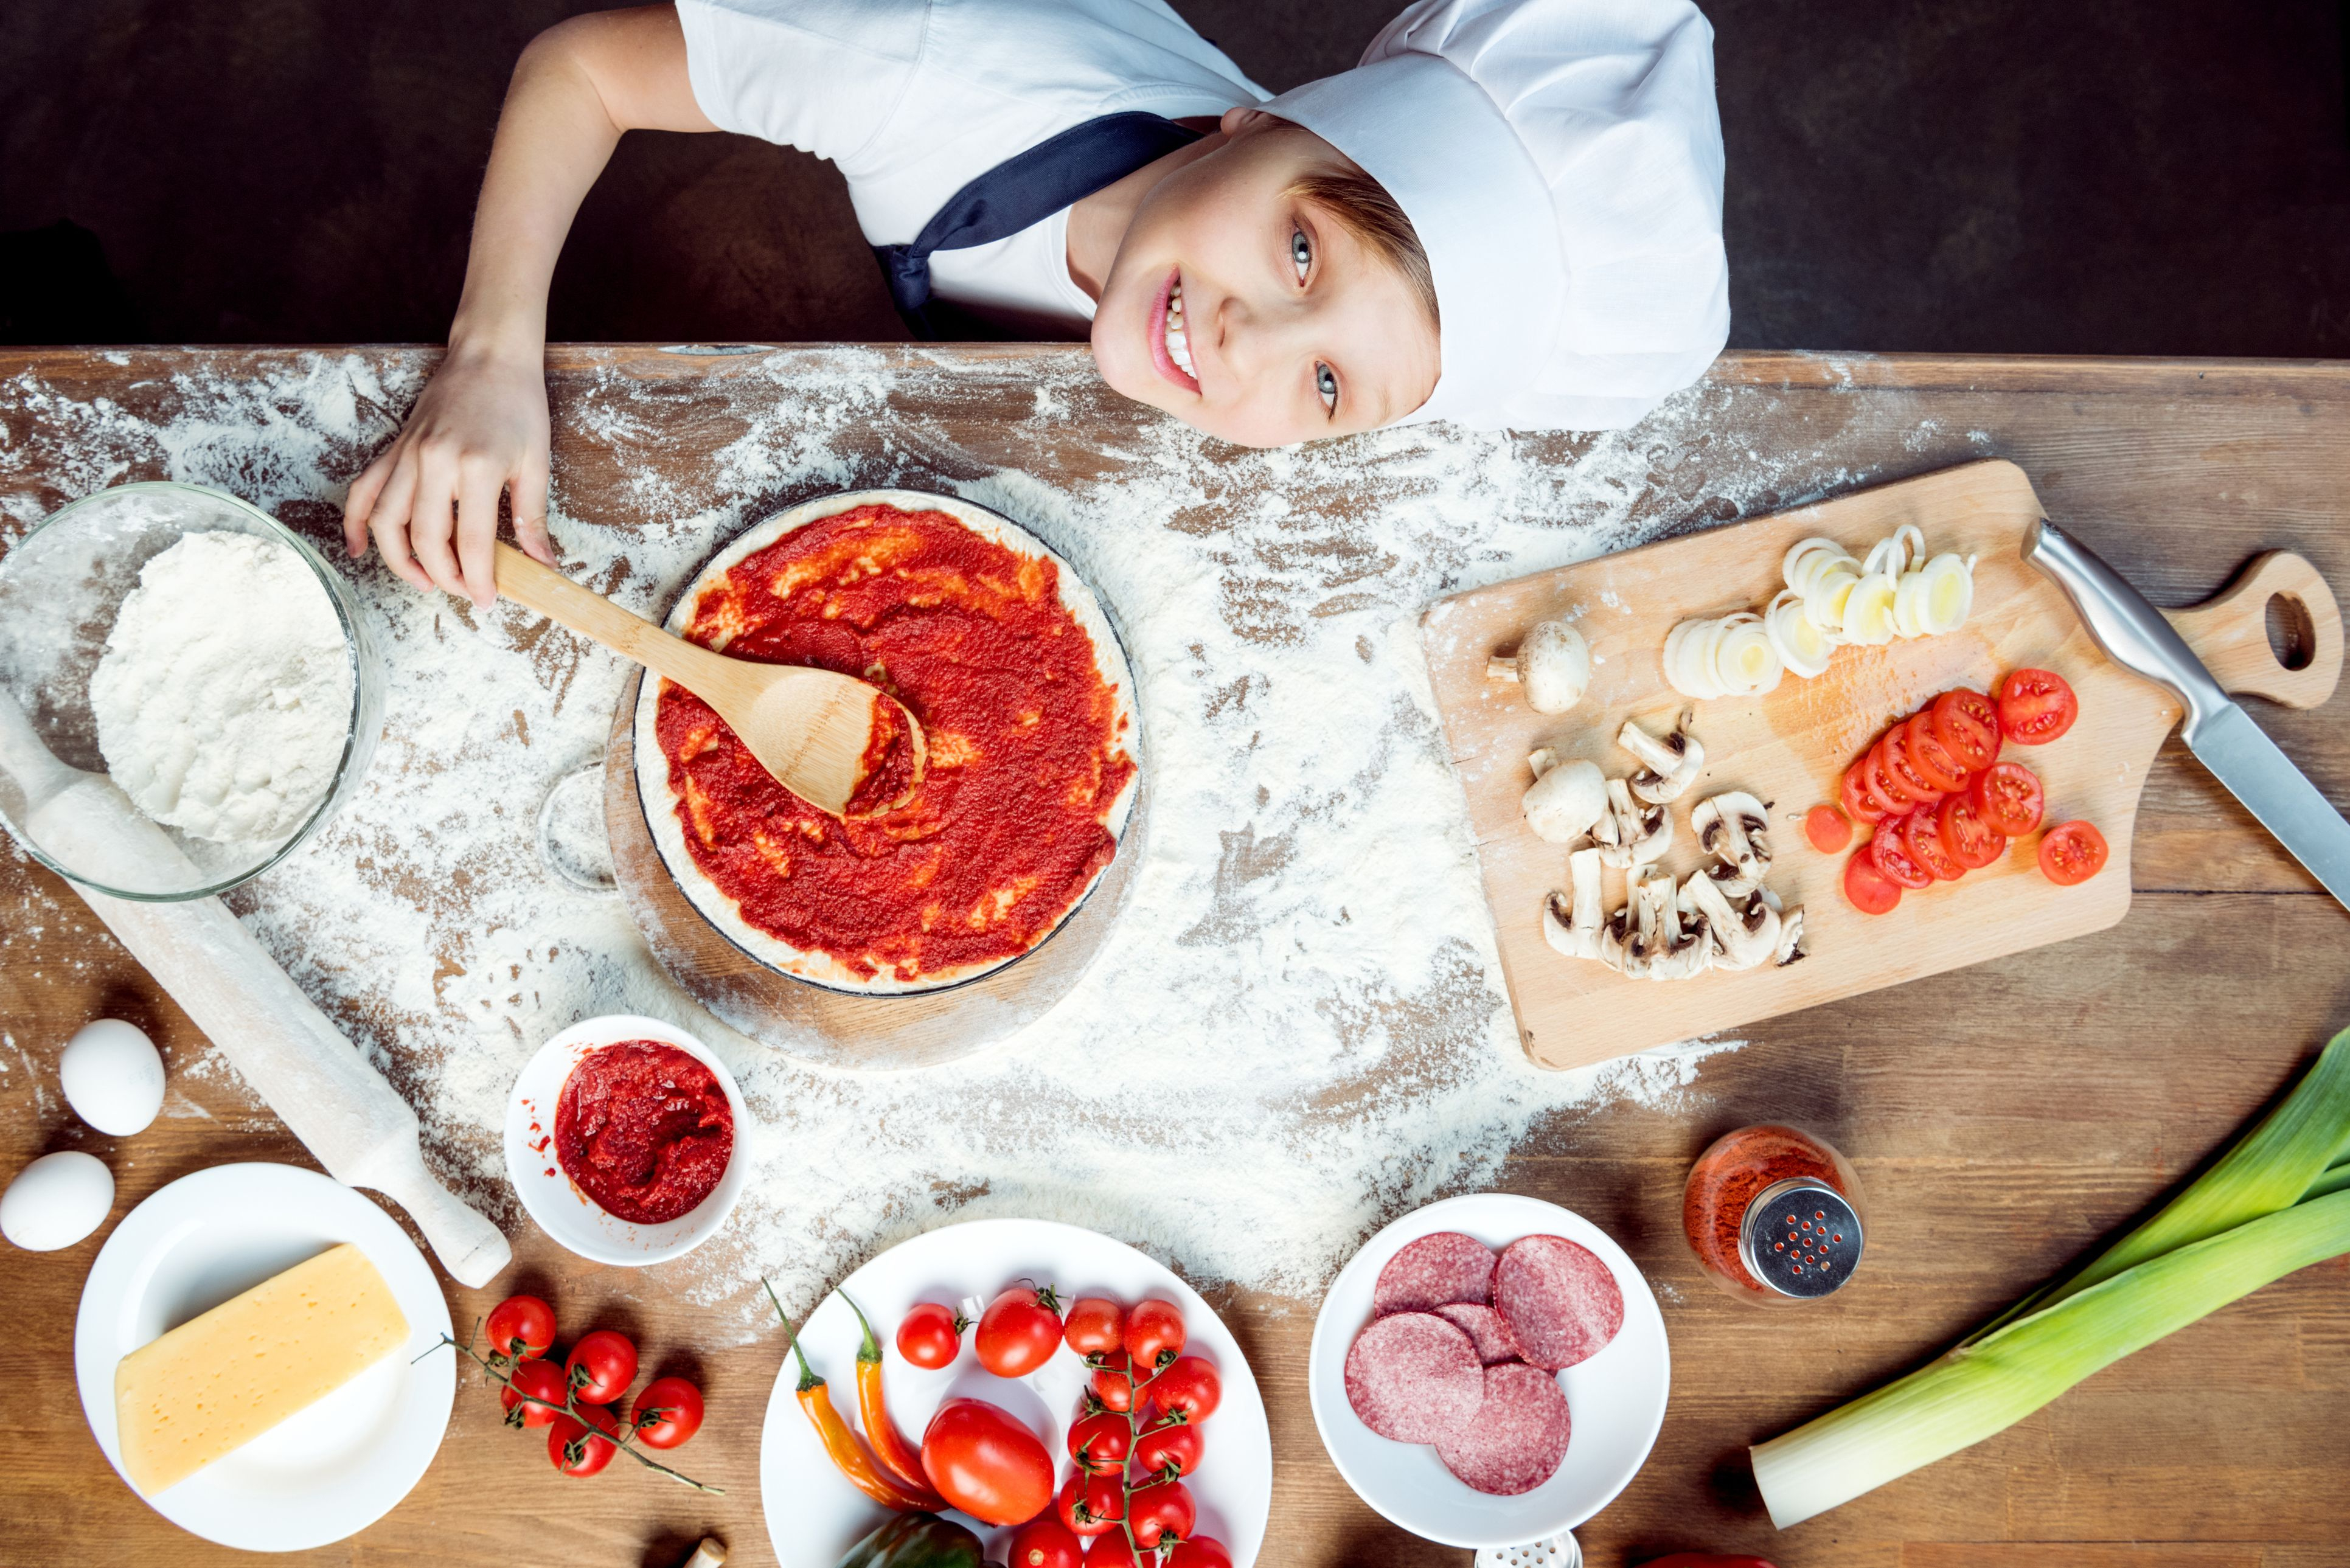 Cuisiner Avec Des Enfants : Recettes Faciles Pour Enfants encequiconcerne Cuisiner Avec Des Enfants